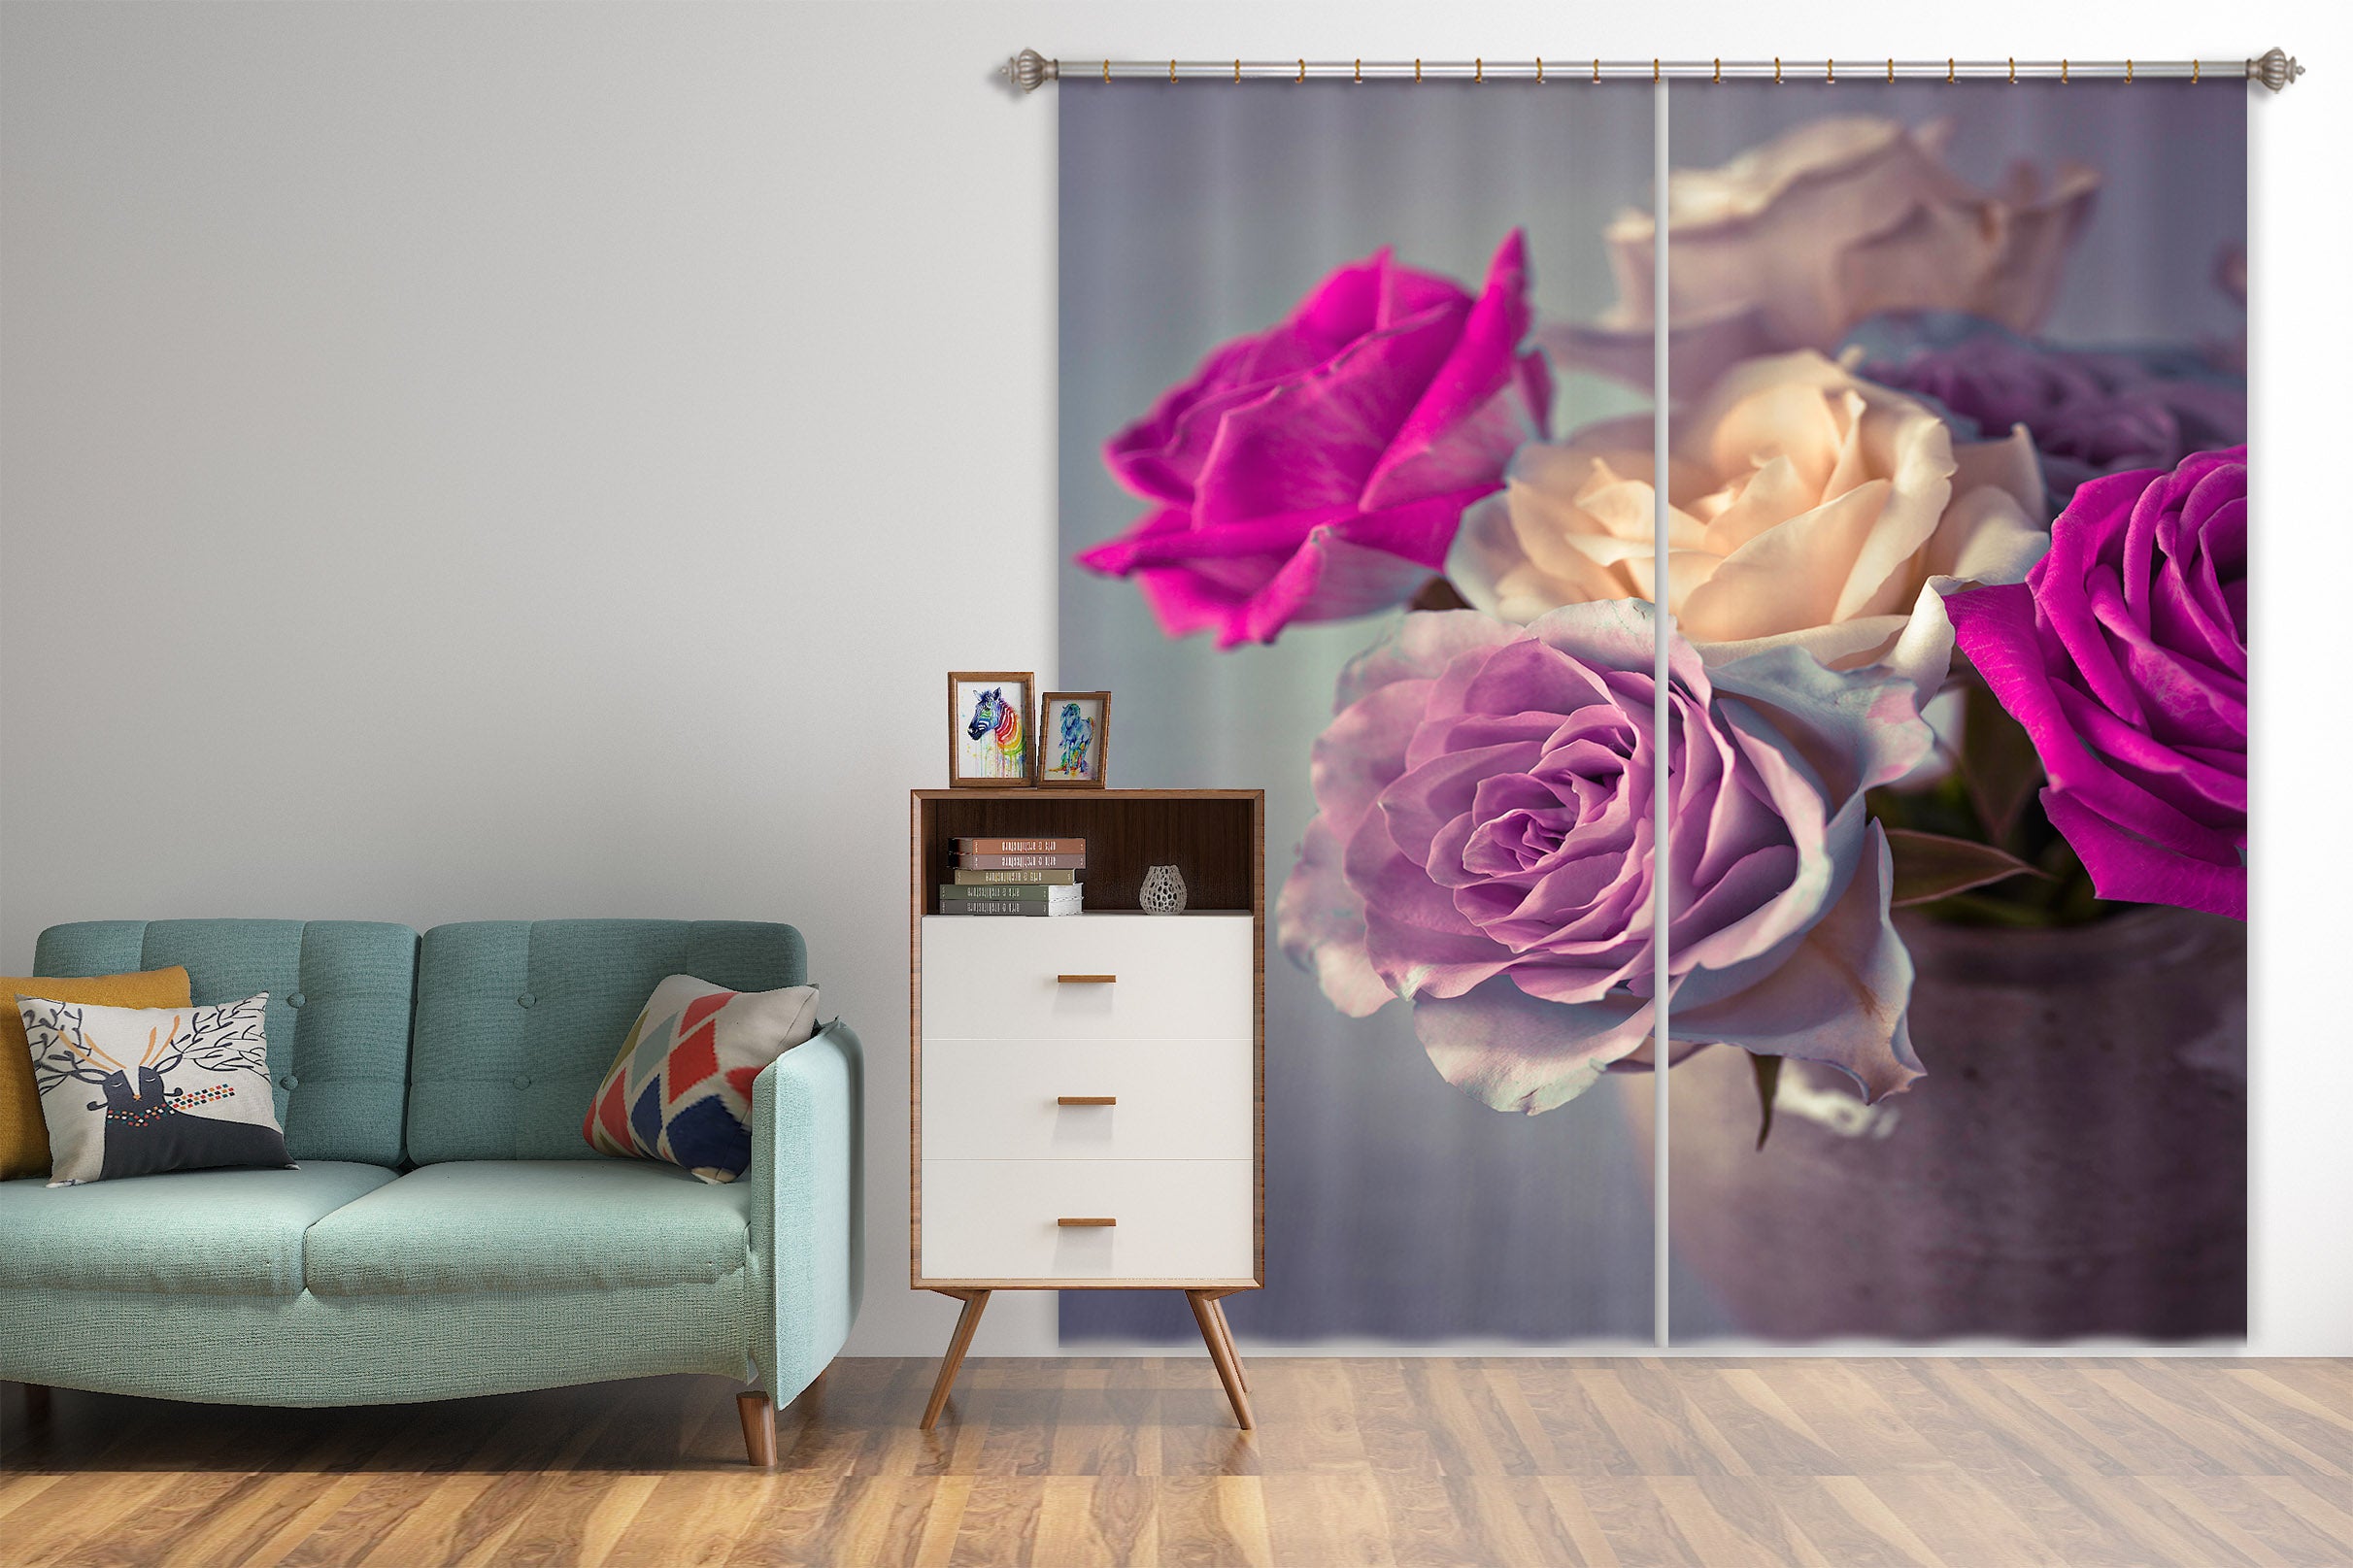 3D Color Rose 210 Assaf Frank Curtain Curtains Drapes